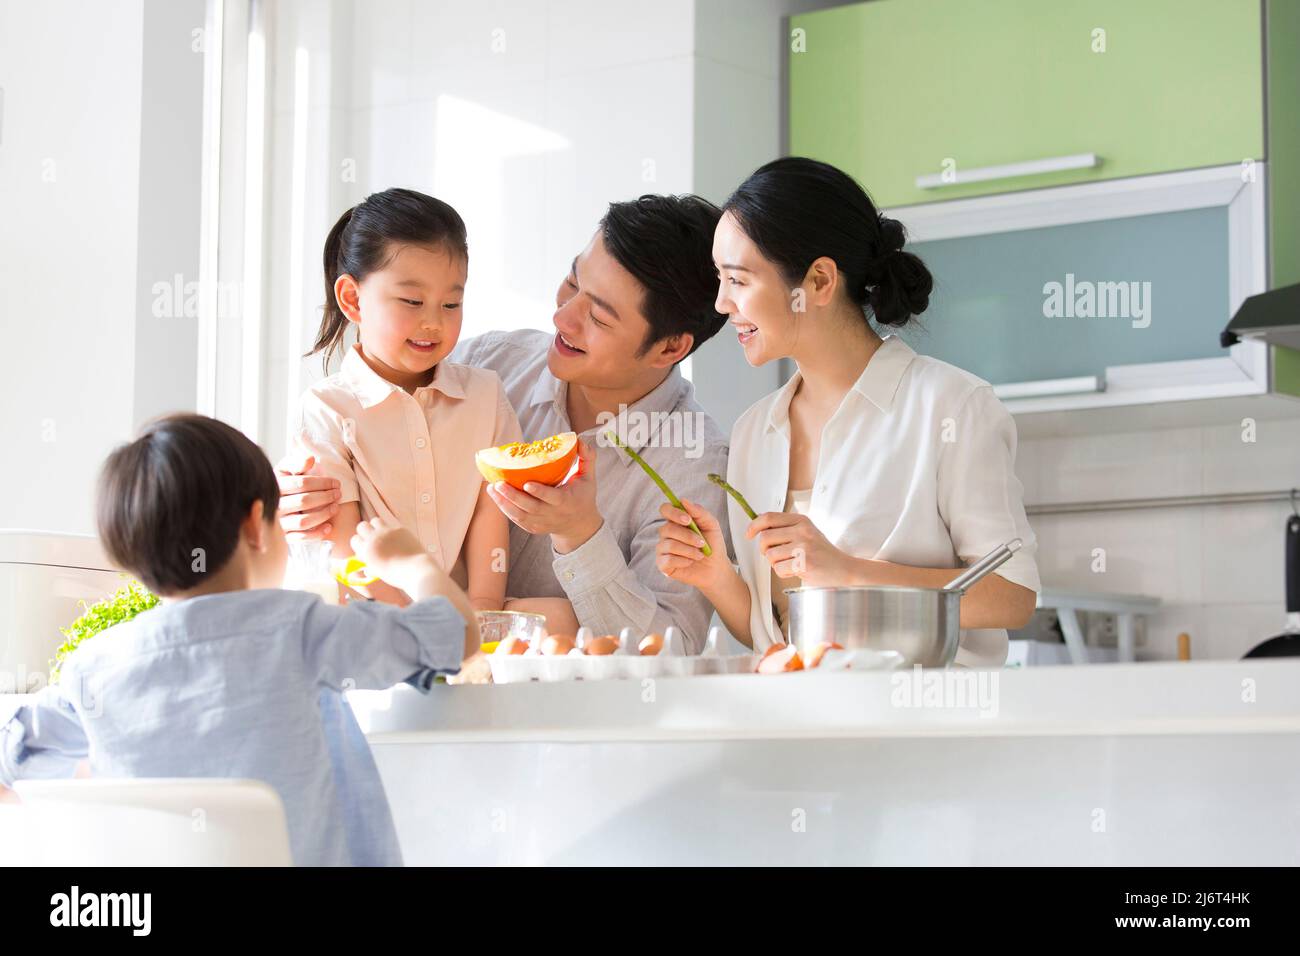 Famiglia cucina parentage. I giovani genitori giocano con loro figlio e figlia mentre cucinano insieme. - foto di scorta Foto Stock